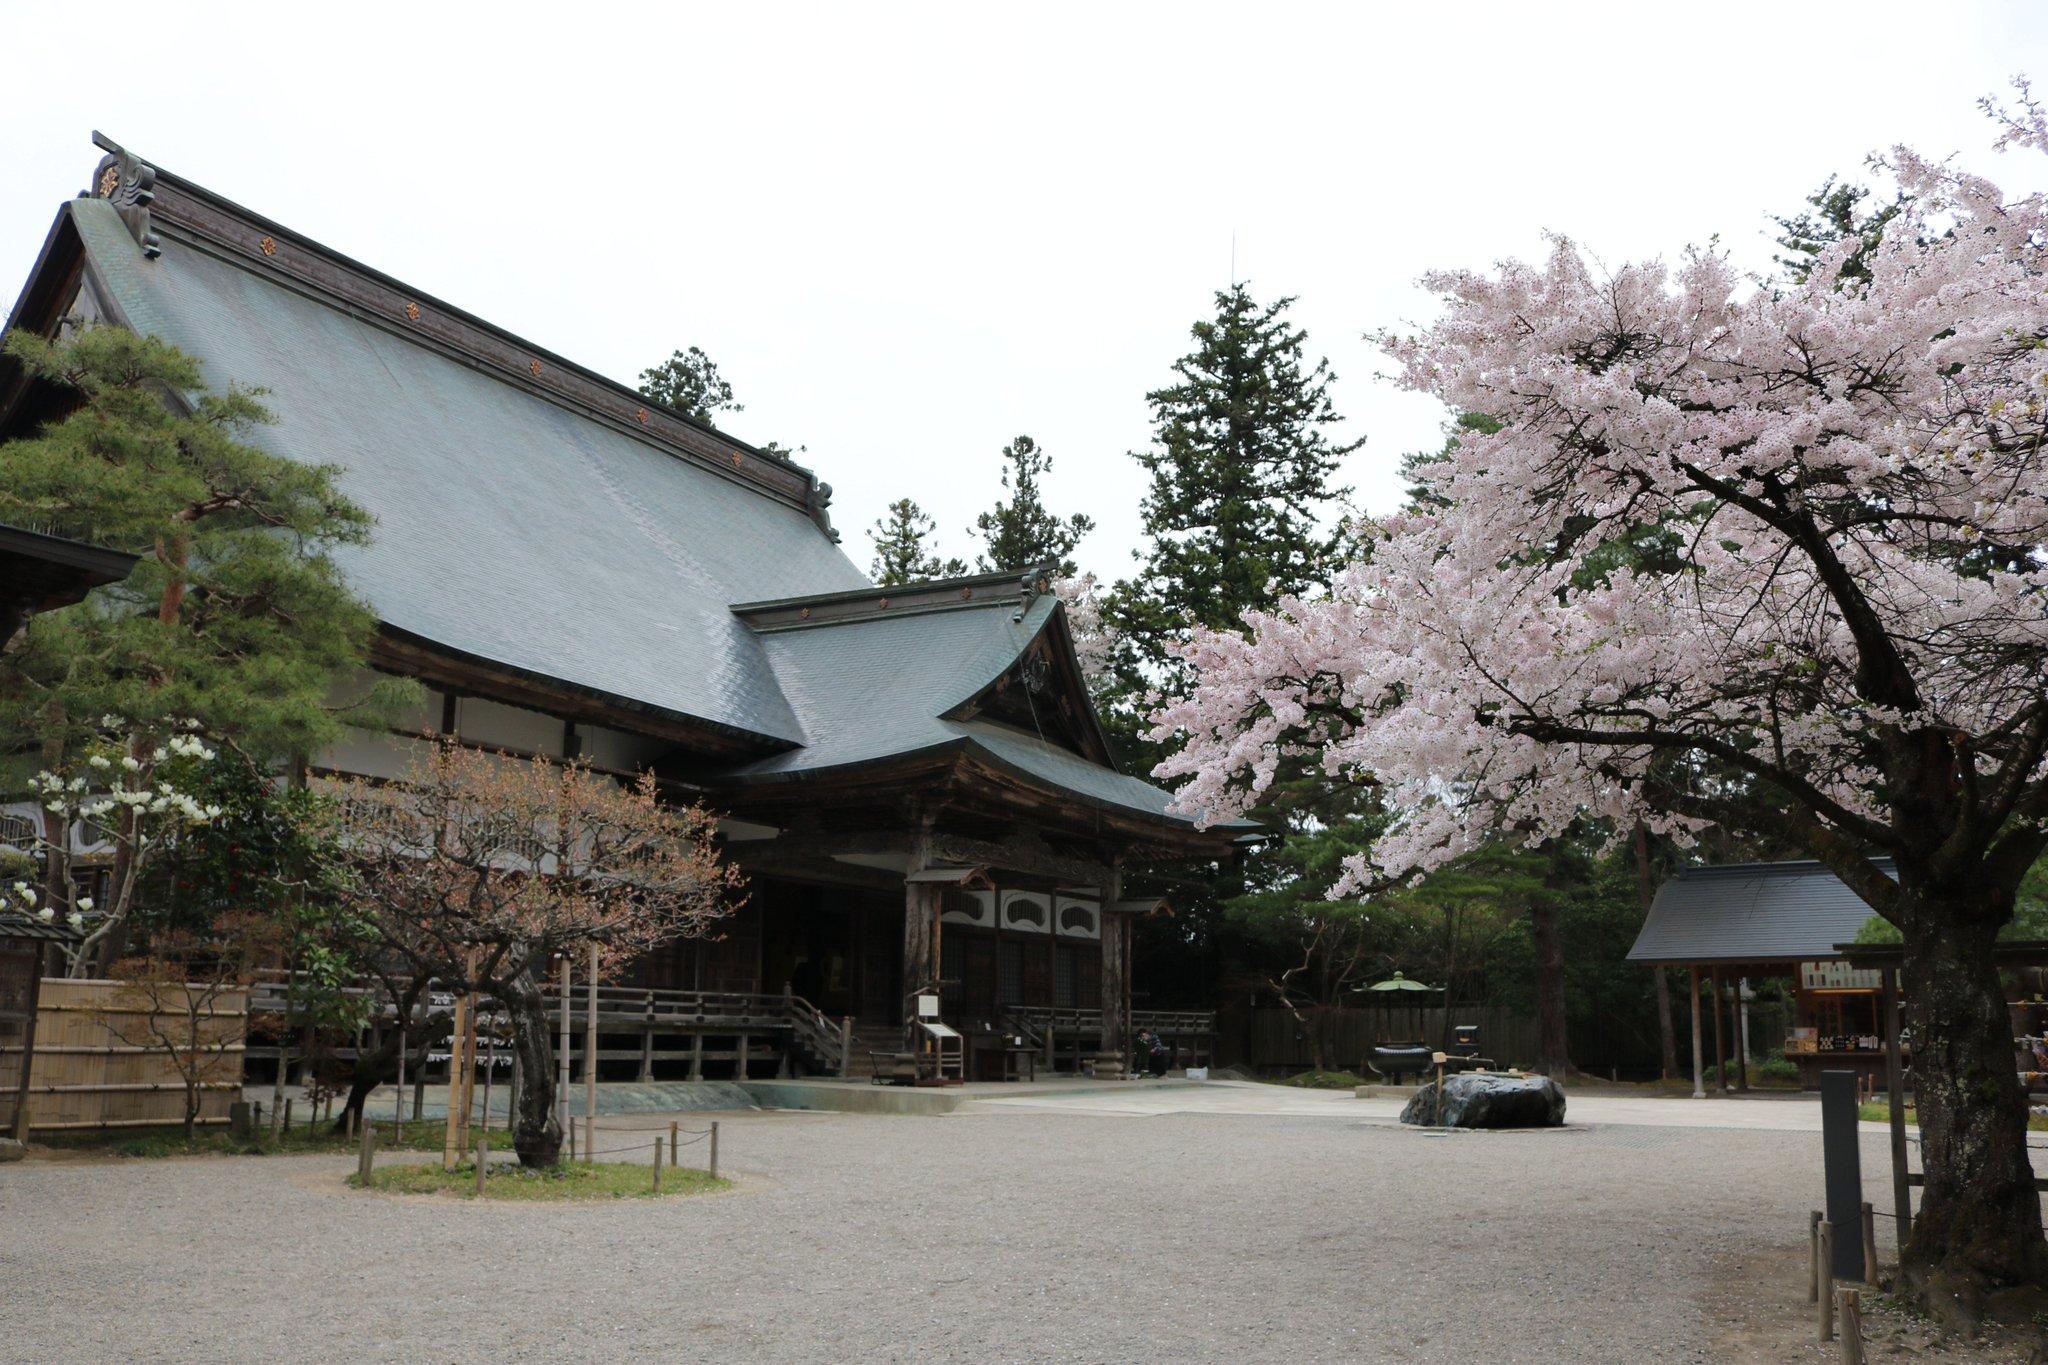 Tokyo Tweet Bird در توییتر Sakura フォトフェスティバル 16 中尊寺 の 桜 です 古代日本で高い地位を誇っていた武士の藤原氏が拠点としていた寺です 中尊寺の本堂や 金色堂 には桜が春の雰囲気に彩っていました